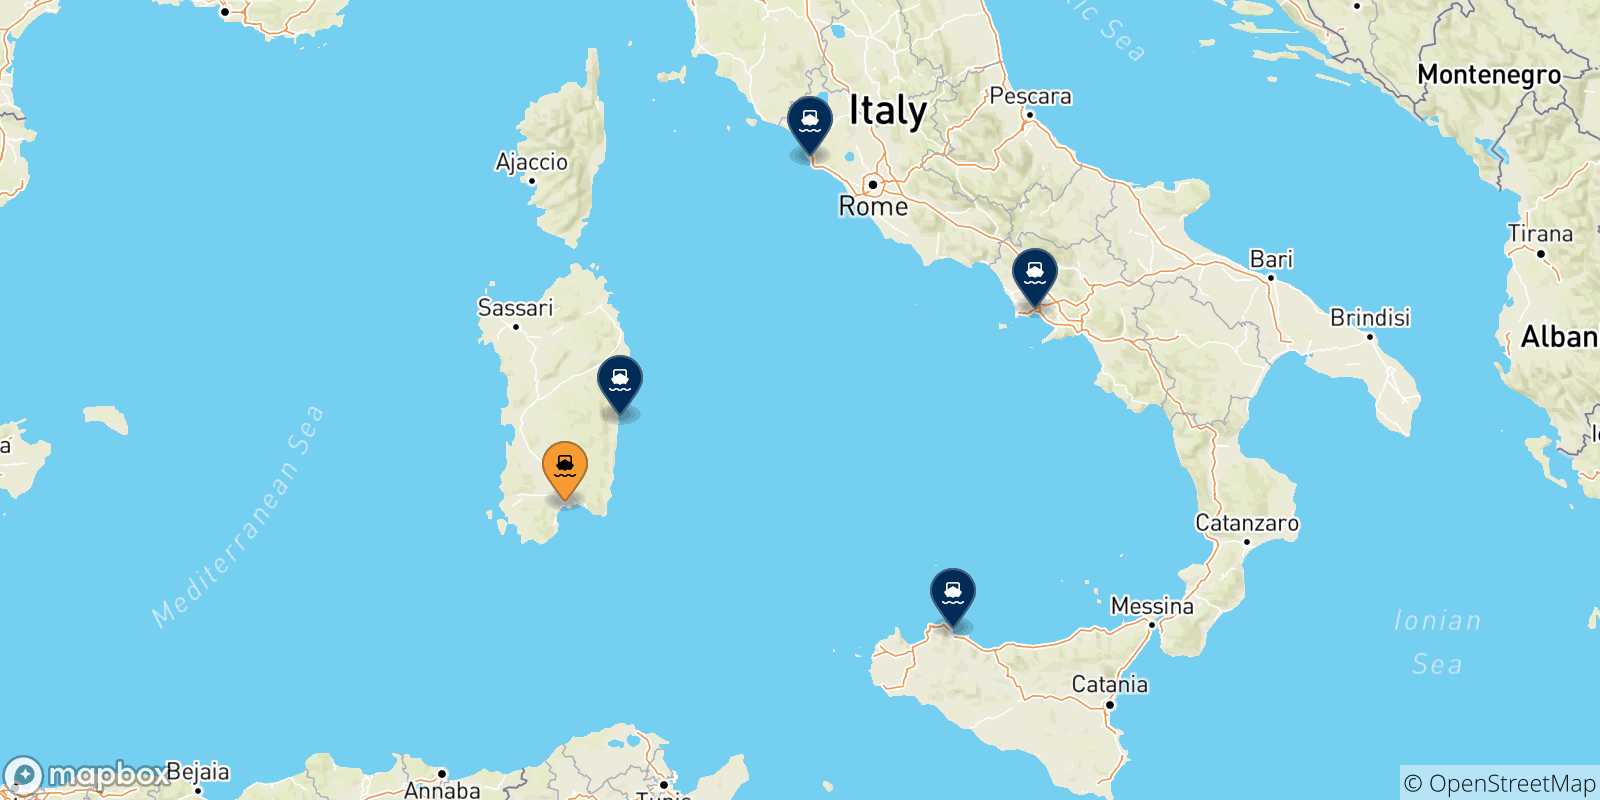 Mappa delle possibili rotte tra Cagliari e l'Italia